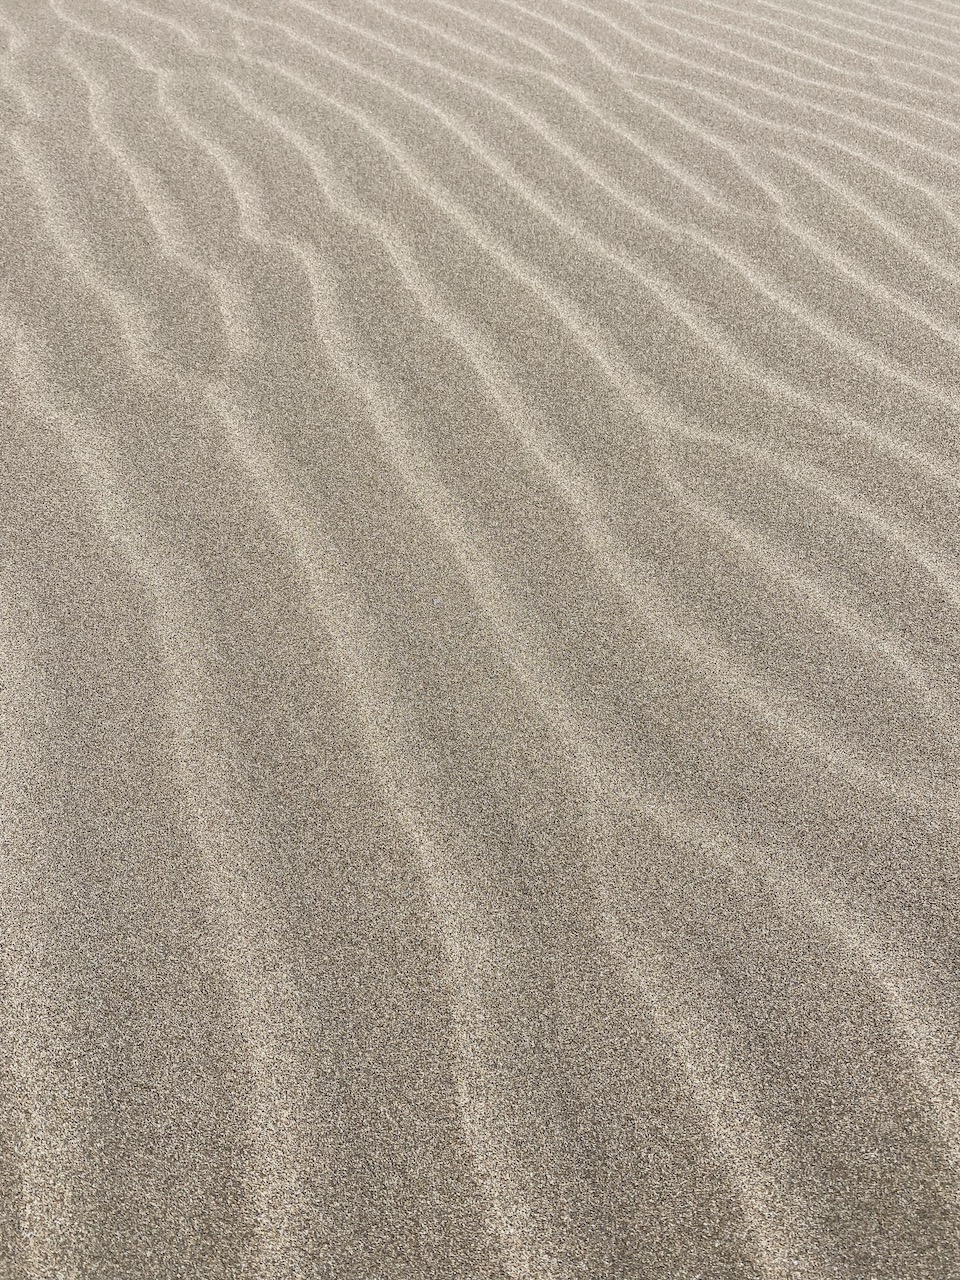 Bild Sand